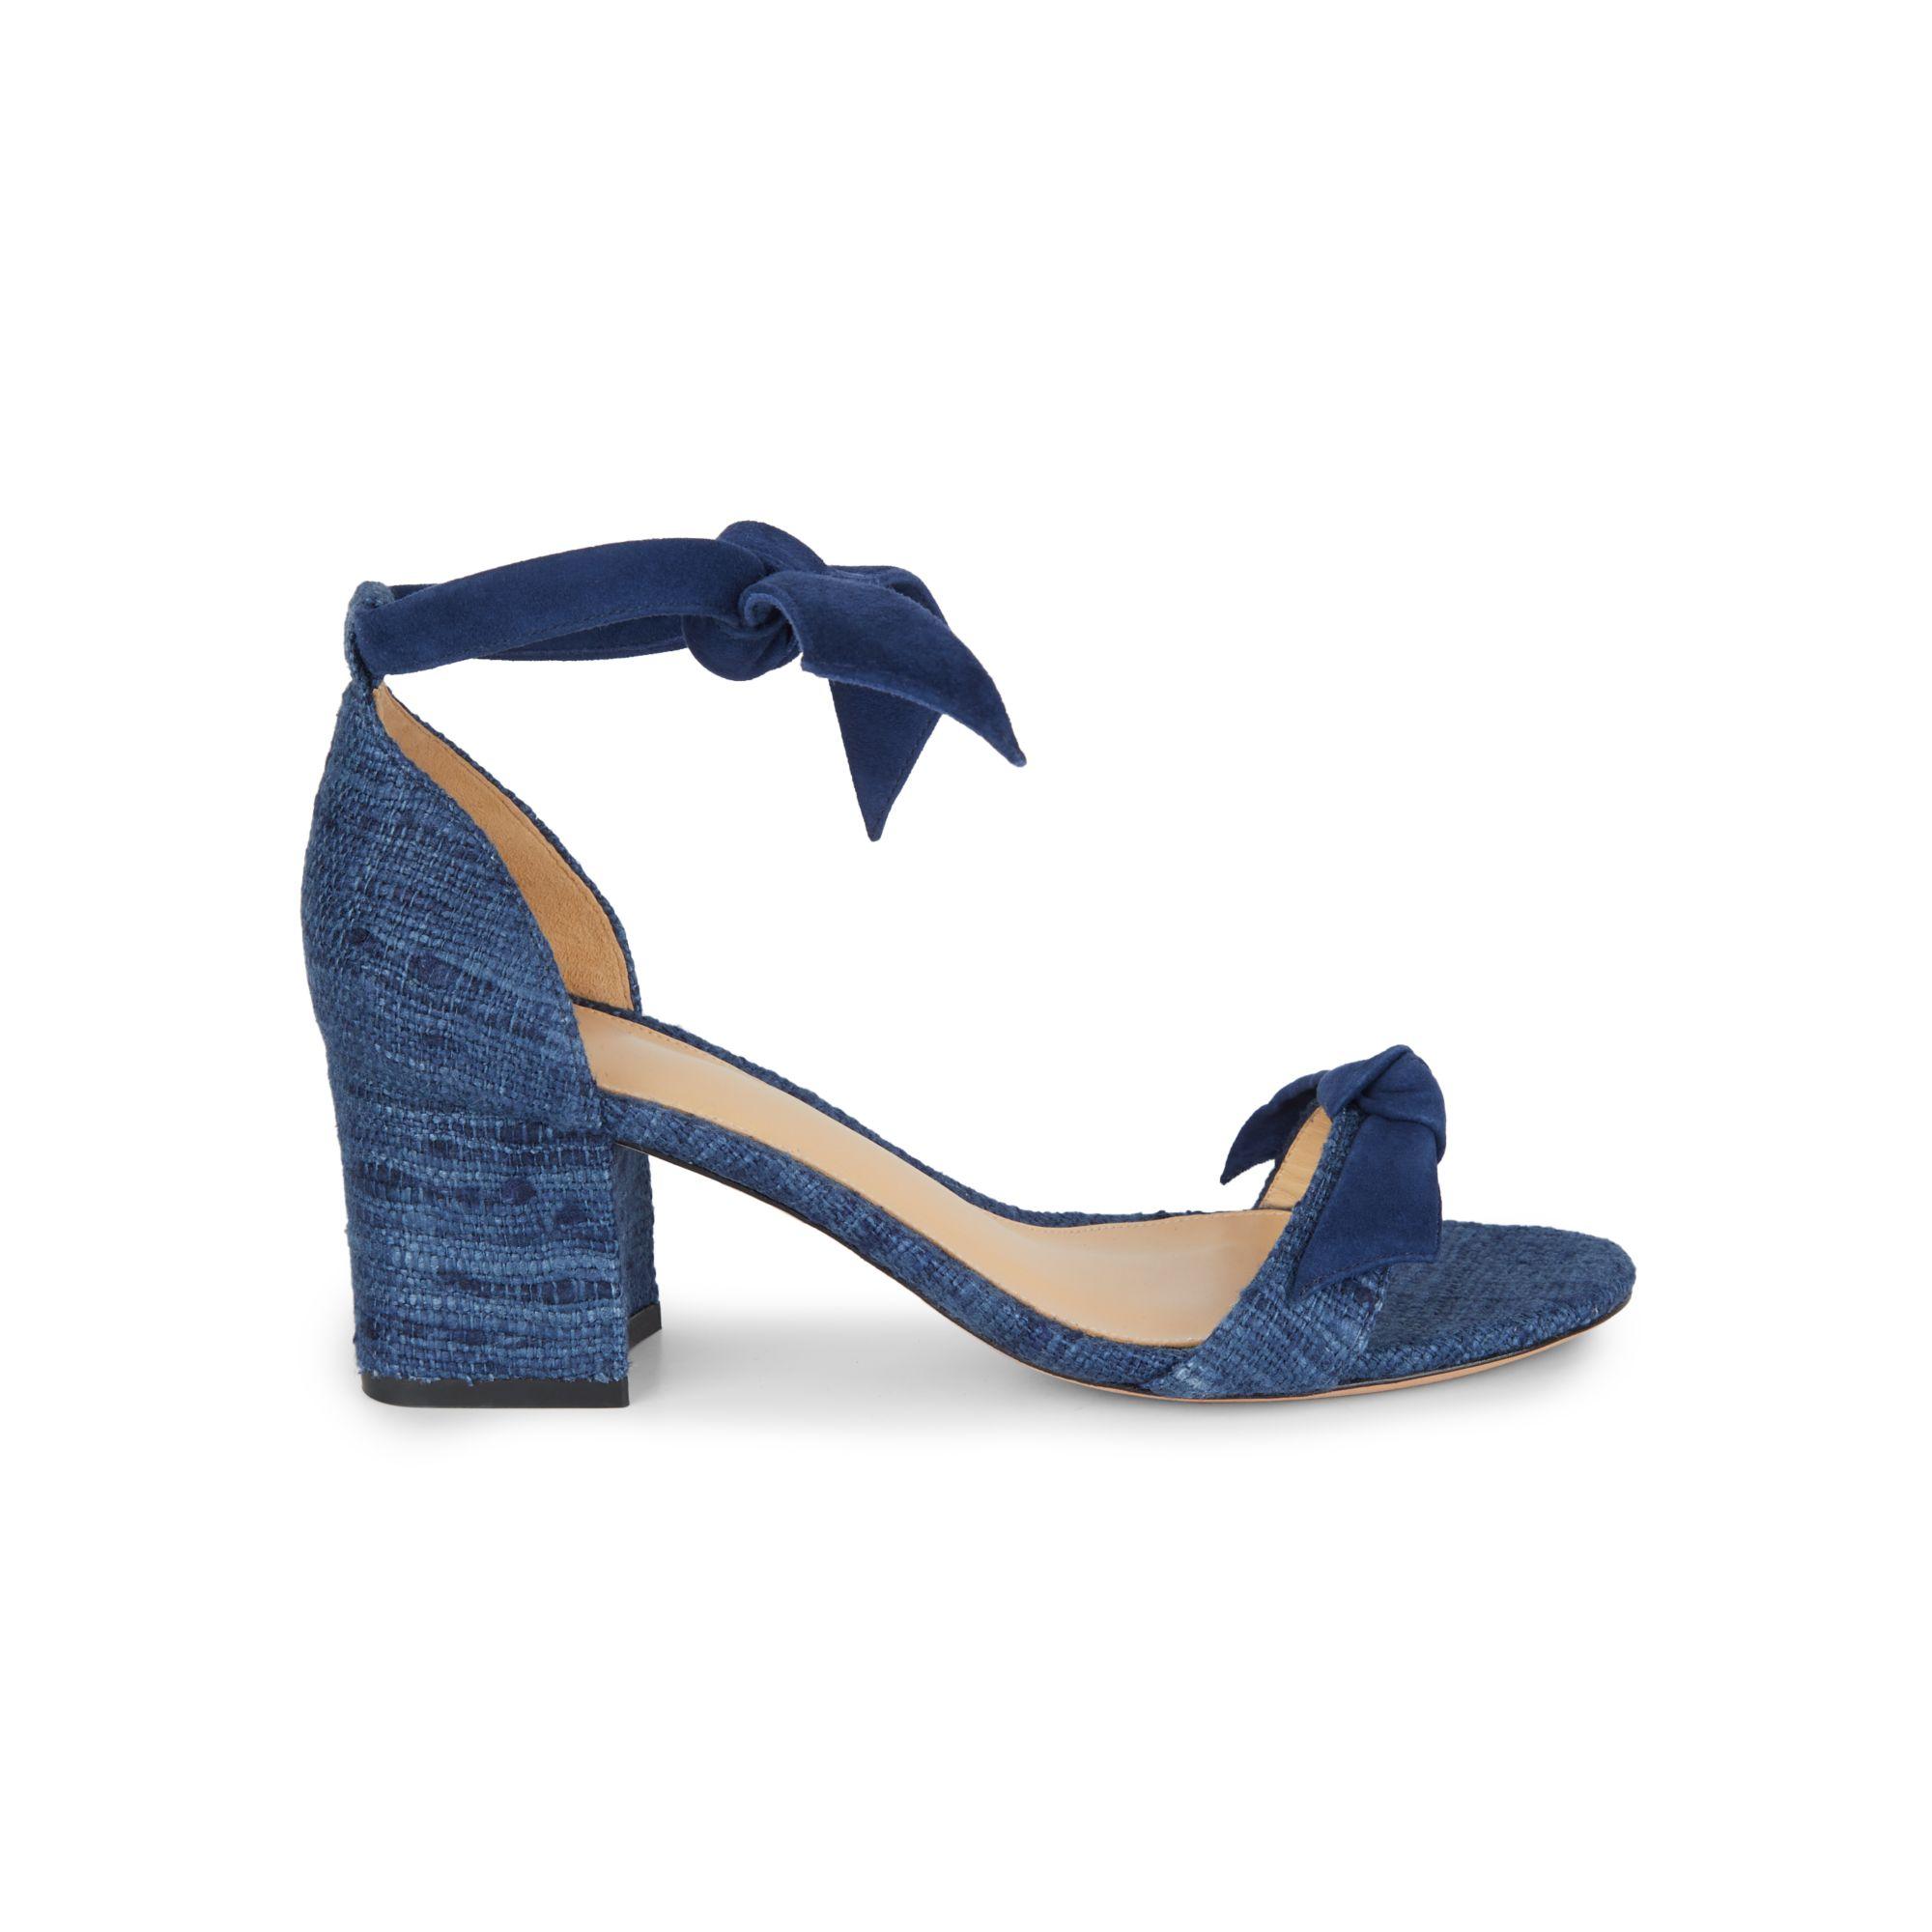 Alexandre Birman Clarita Tweed & Suede Block-heel Sandals in Blue - Lyst